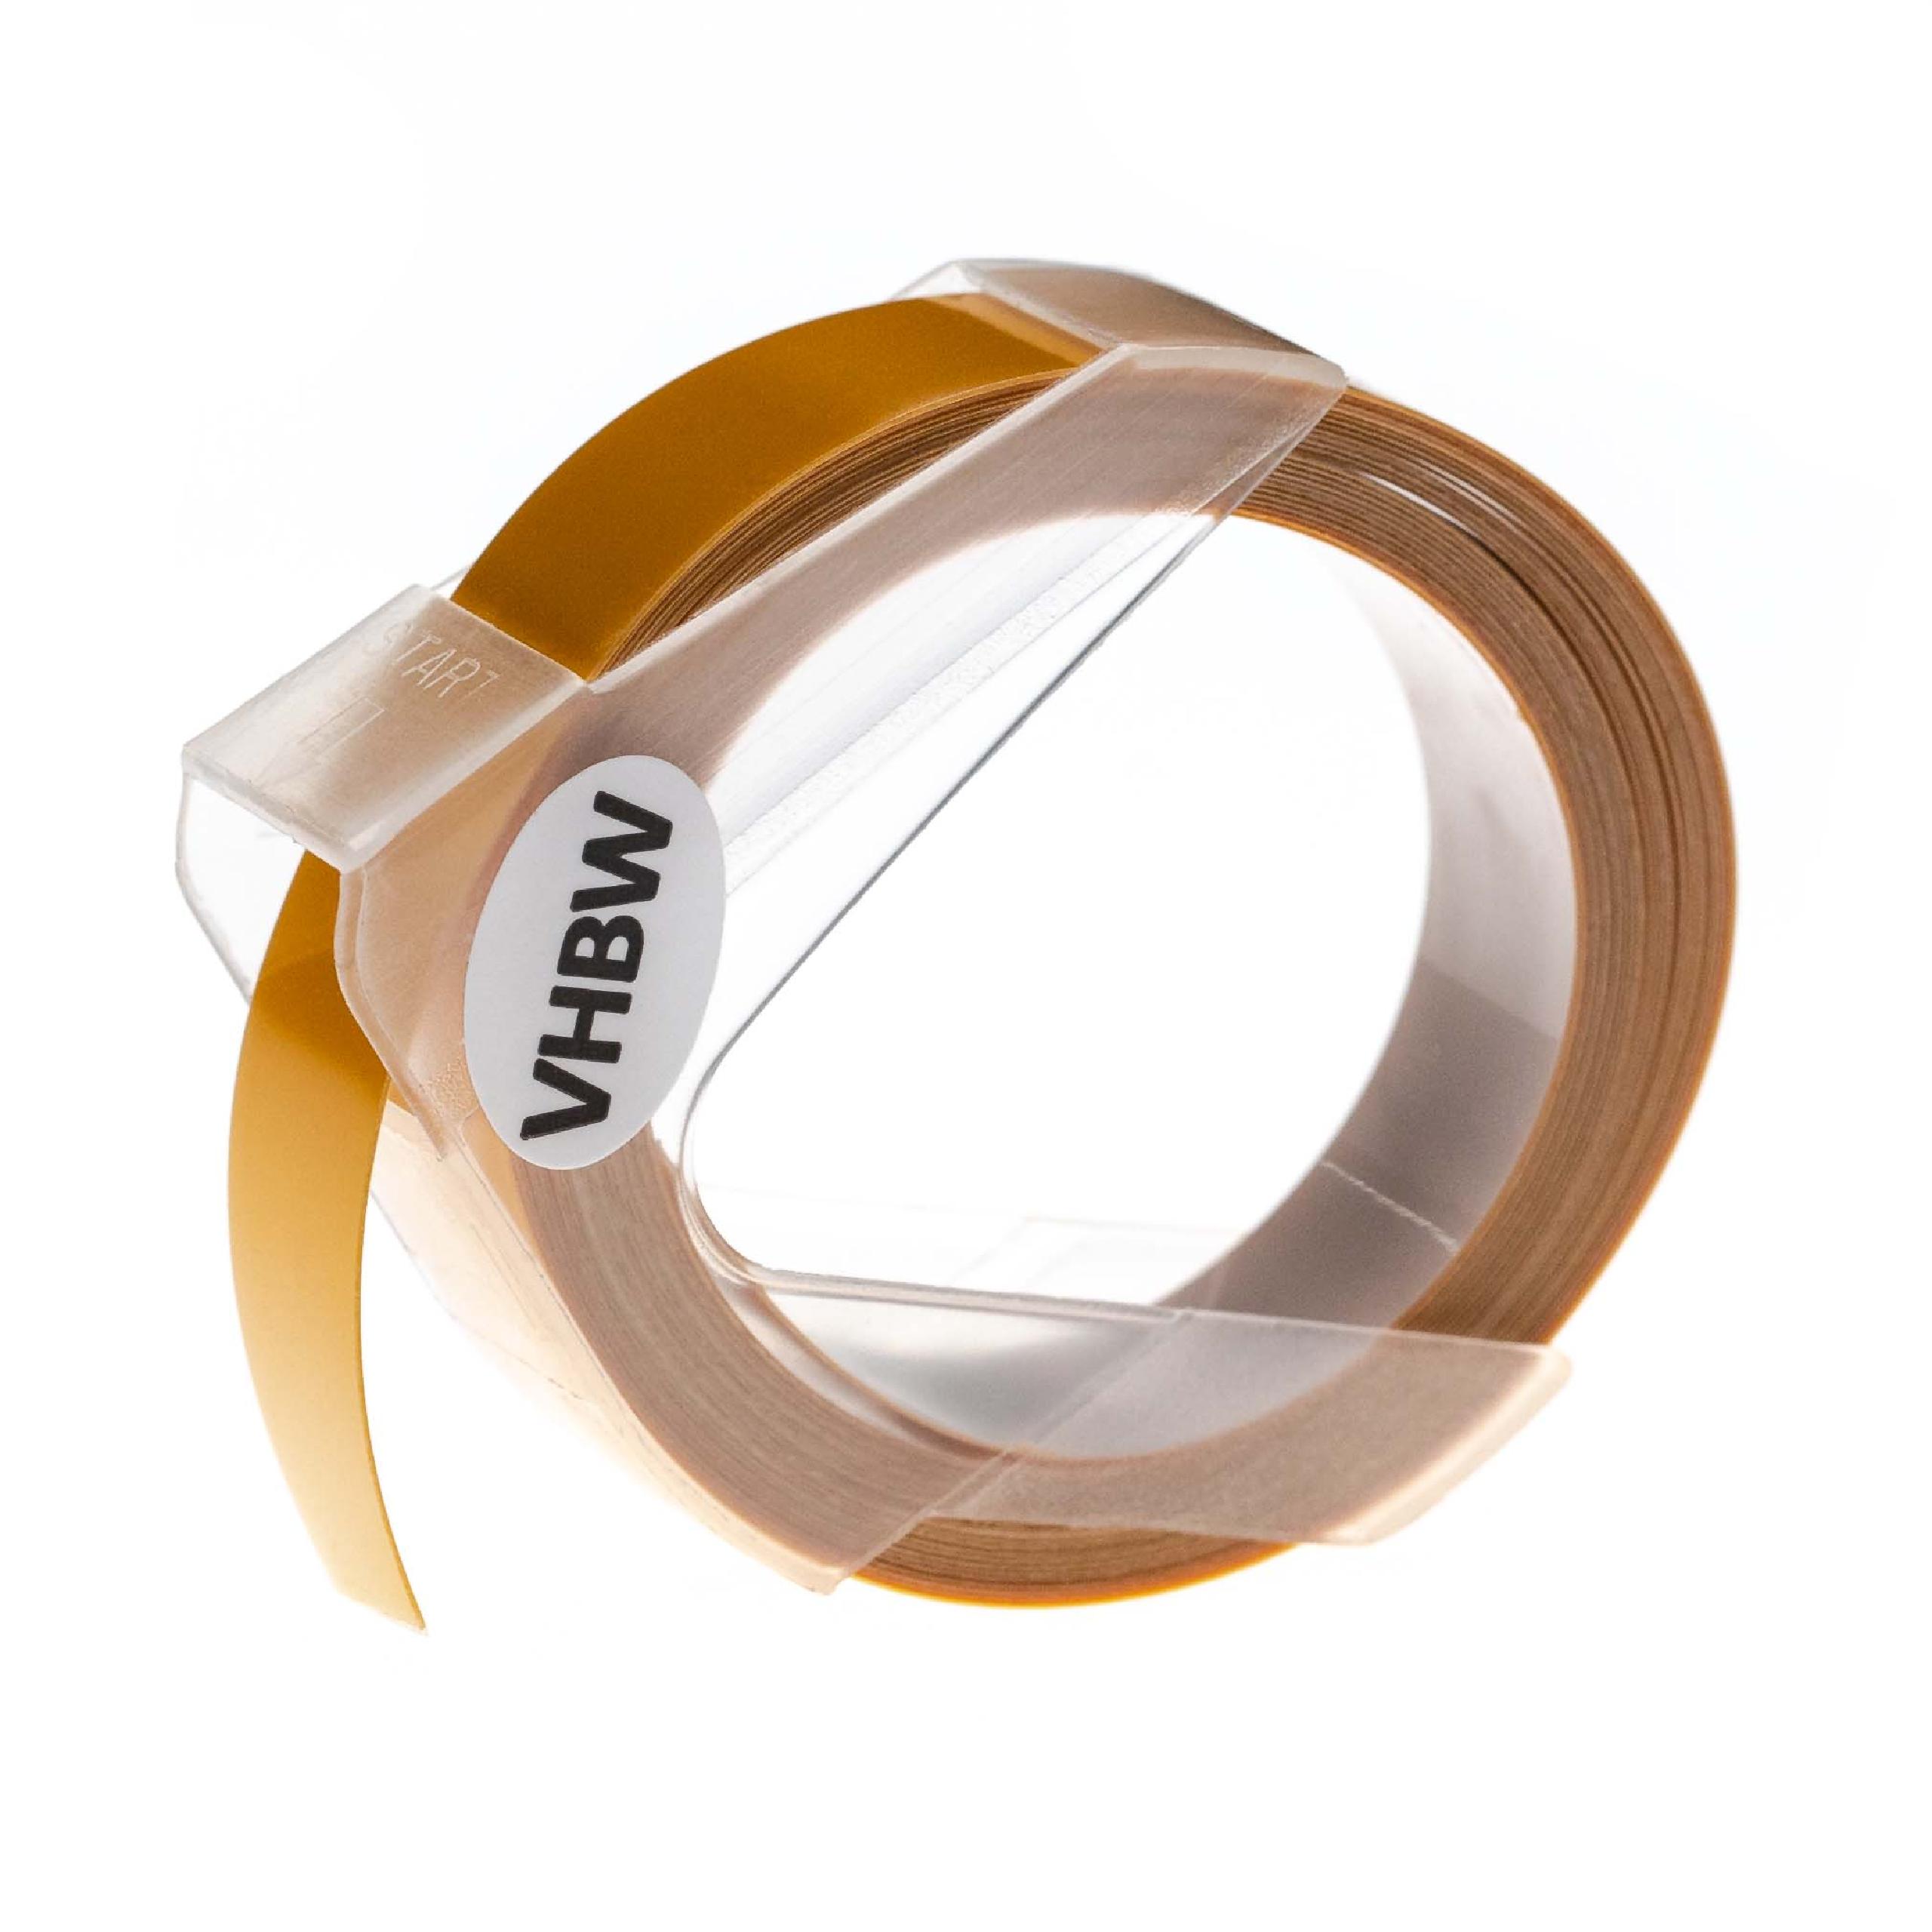 Nastro goffratura 3D sostituisce Dymo 0898172 per etichettatrice Dymo 12mm bianco su giallo scuro